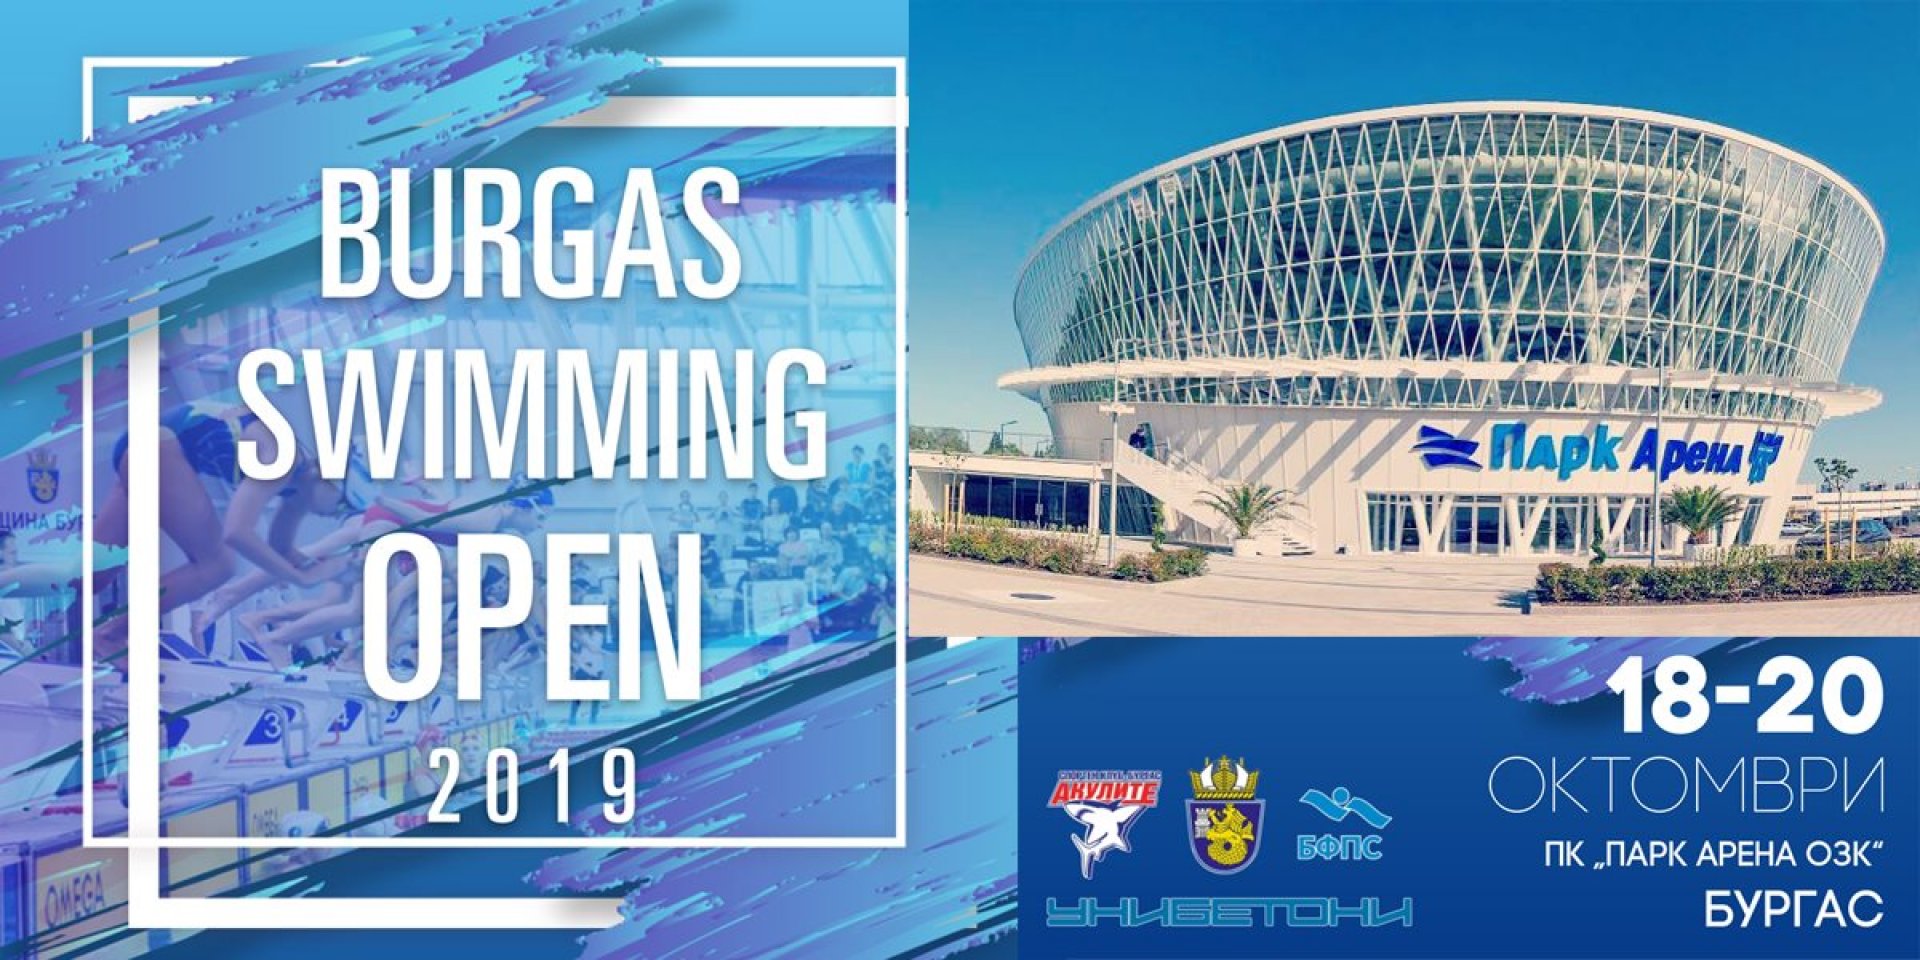 Хитовият изпълнител Атанас Колев и Цанко Цанев, който преплува бургаския залив ще бъдат специални гости на Burgas Swimming Open 2019 - E-Burgas.com